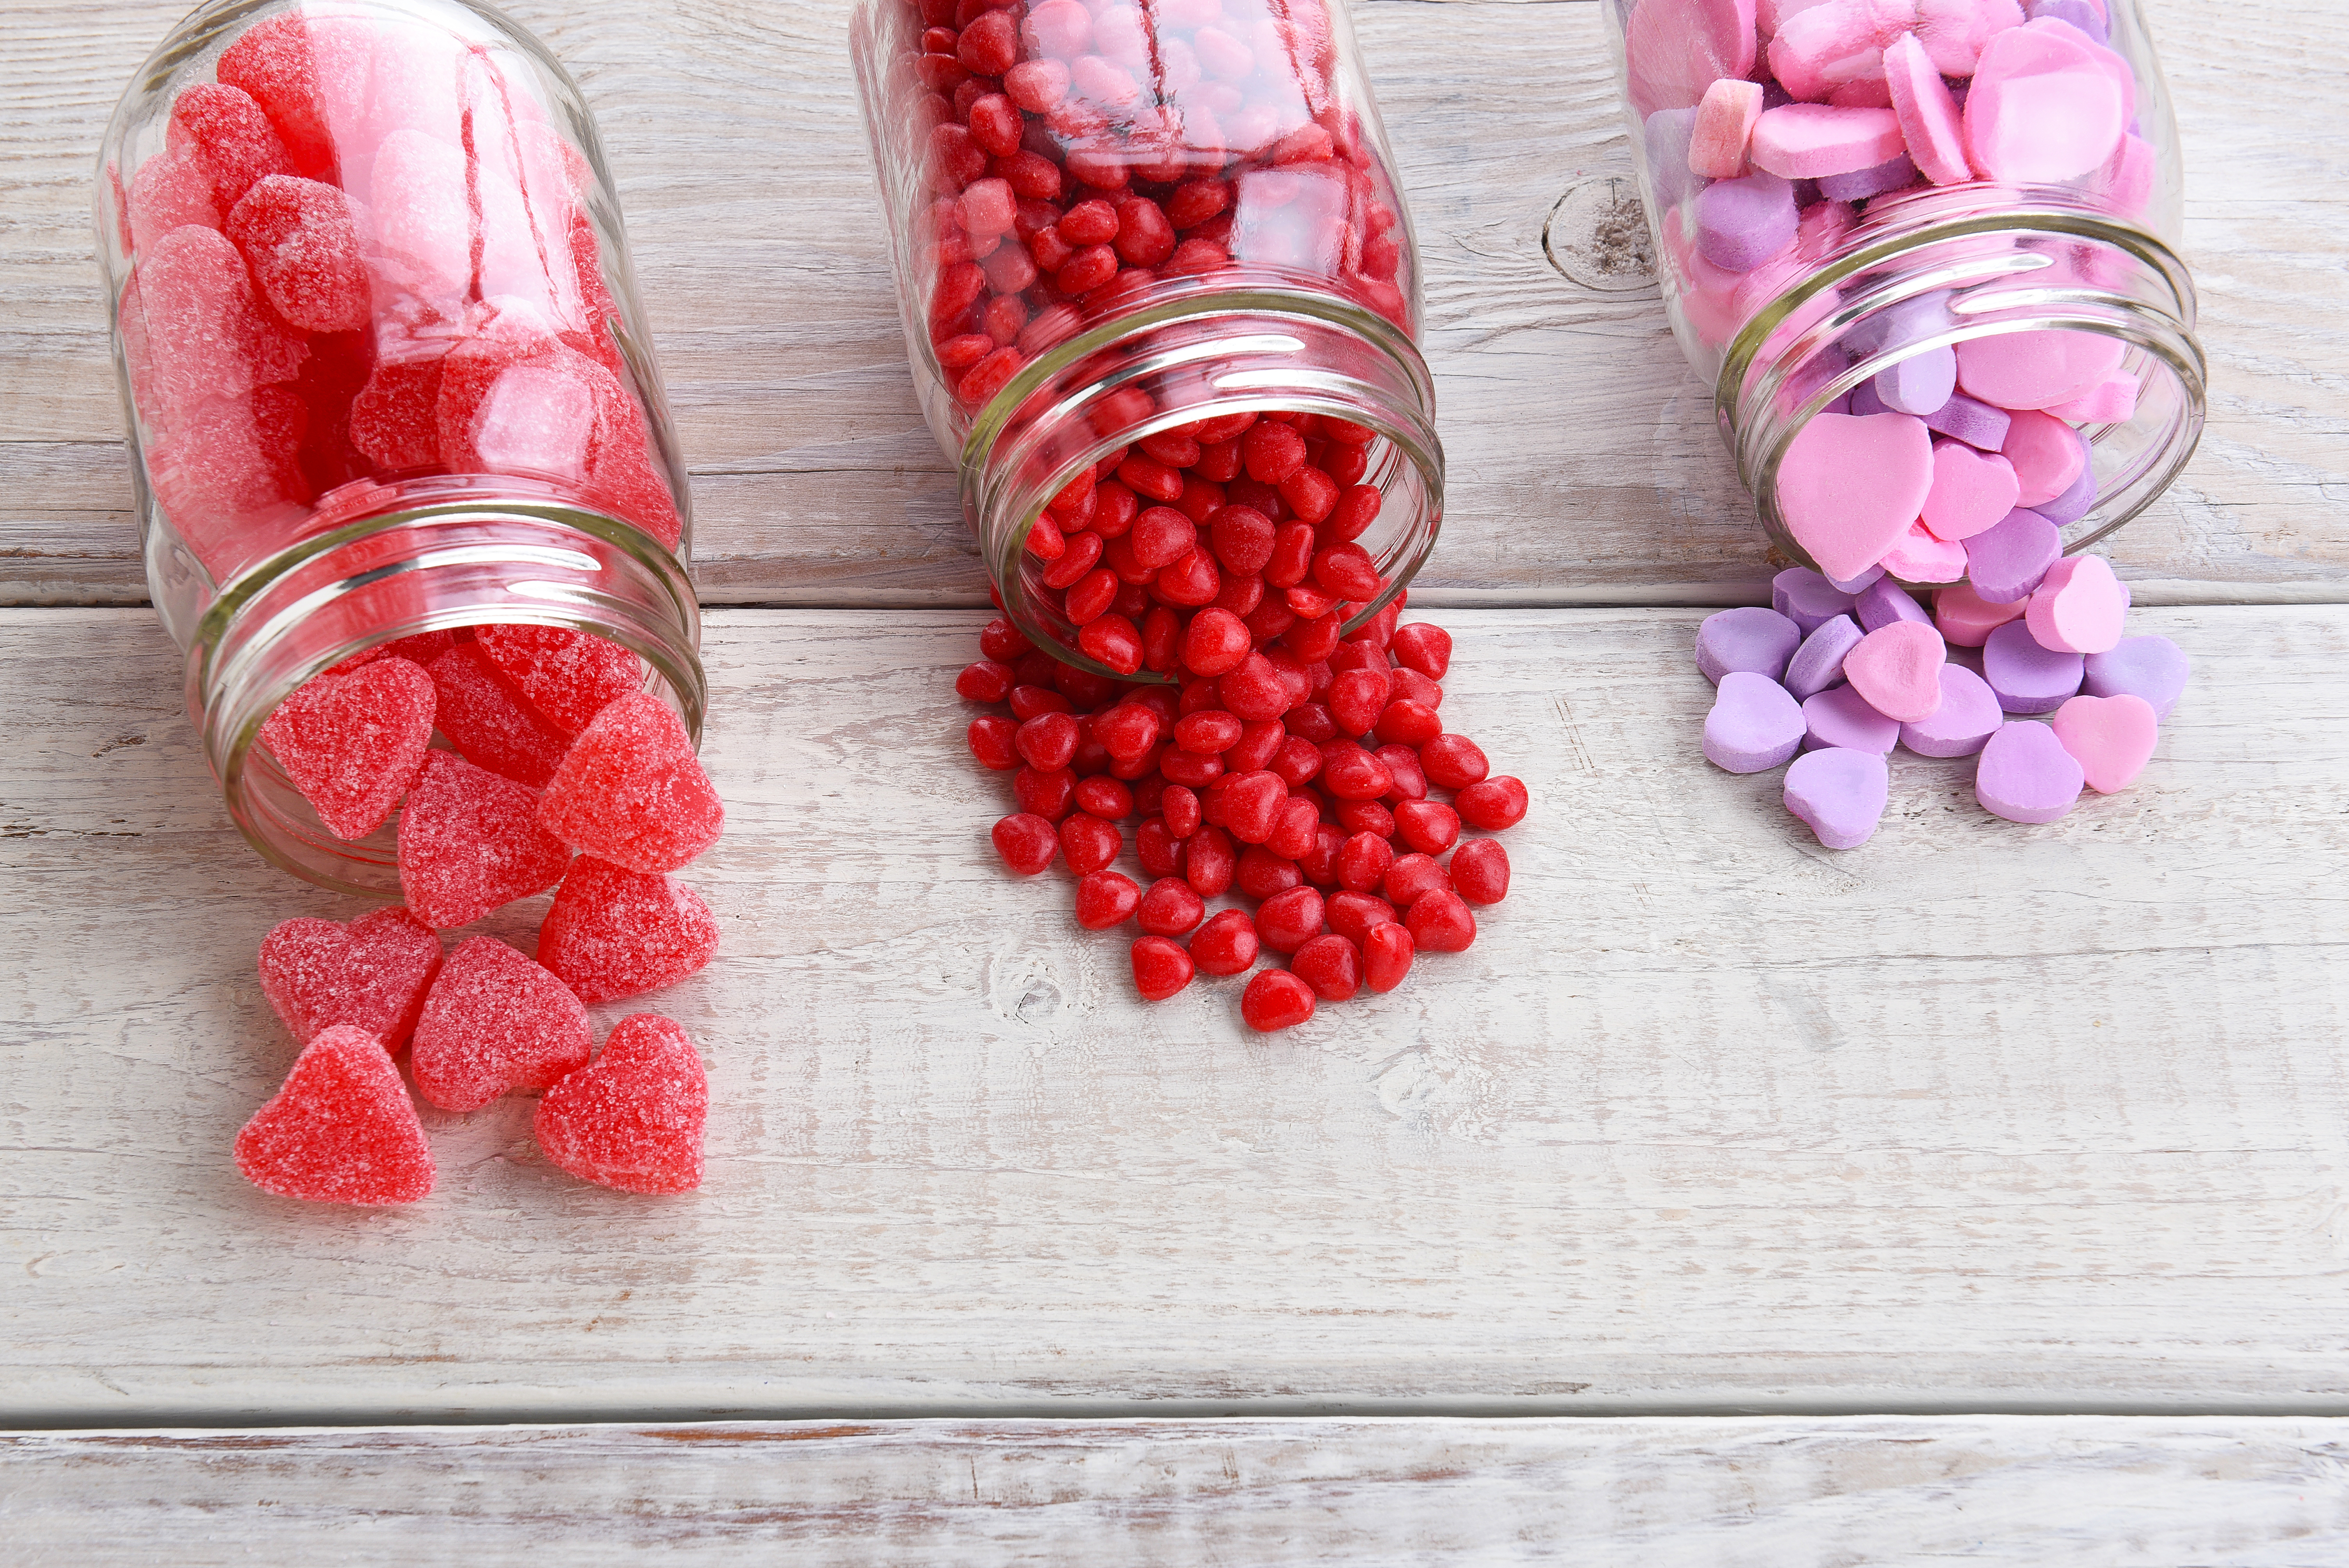 Новый красный пищевой краситель может заменить кармин, чтобы сделать конфеты веганскими